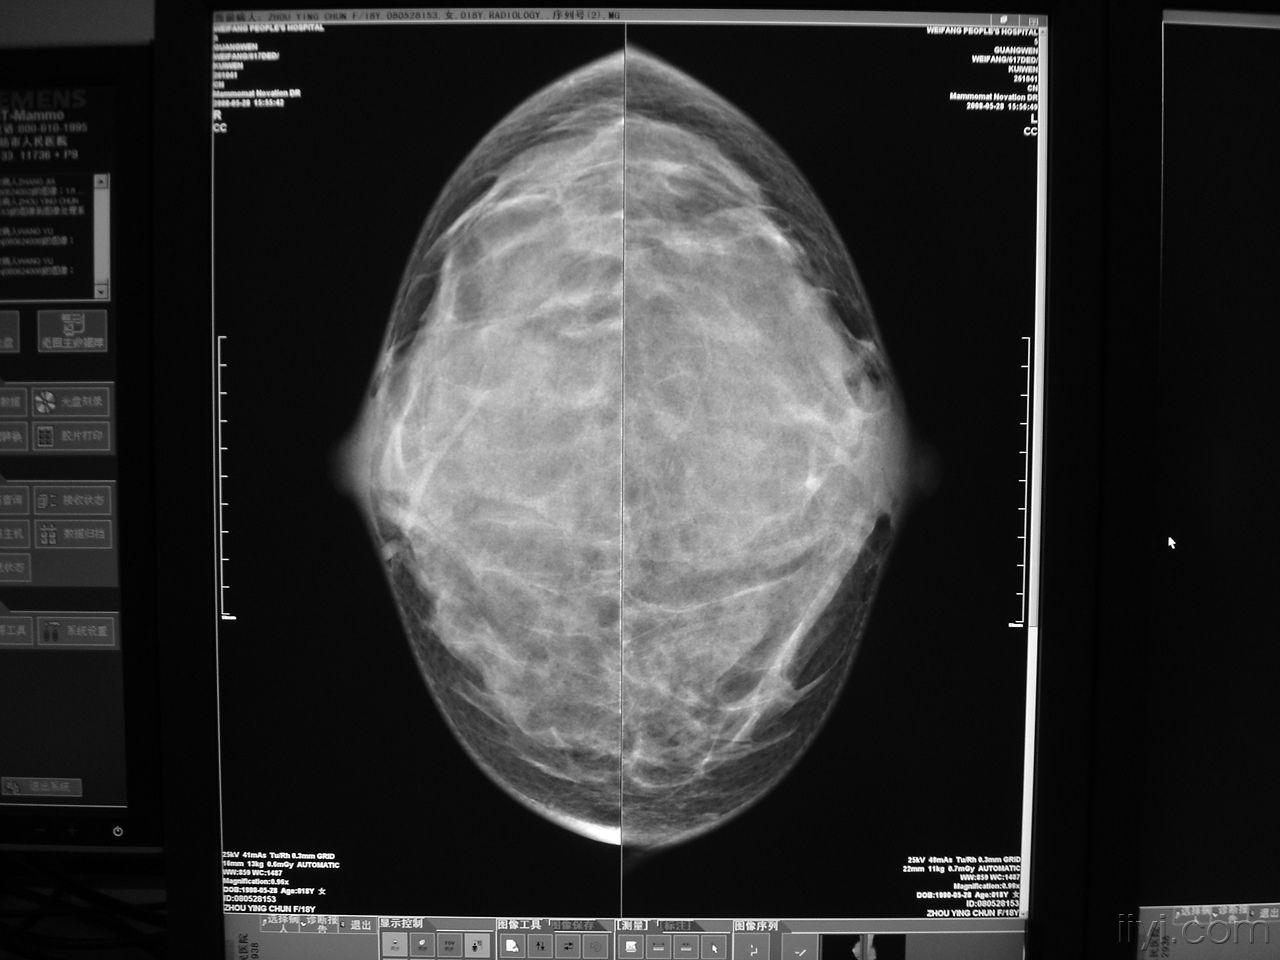 乳腺钼靶穿刺定位--为乳腺病人带来福音 - 影像医学和核医学讨论版 -丁香园论坛